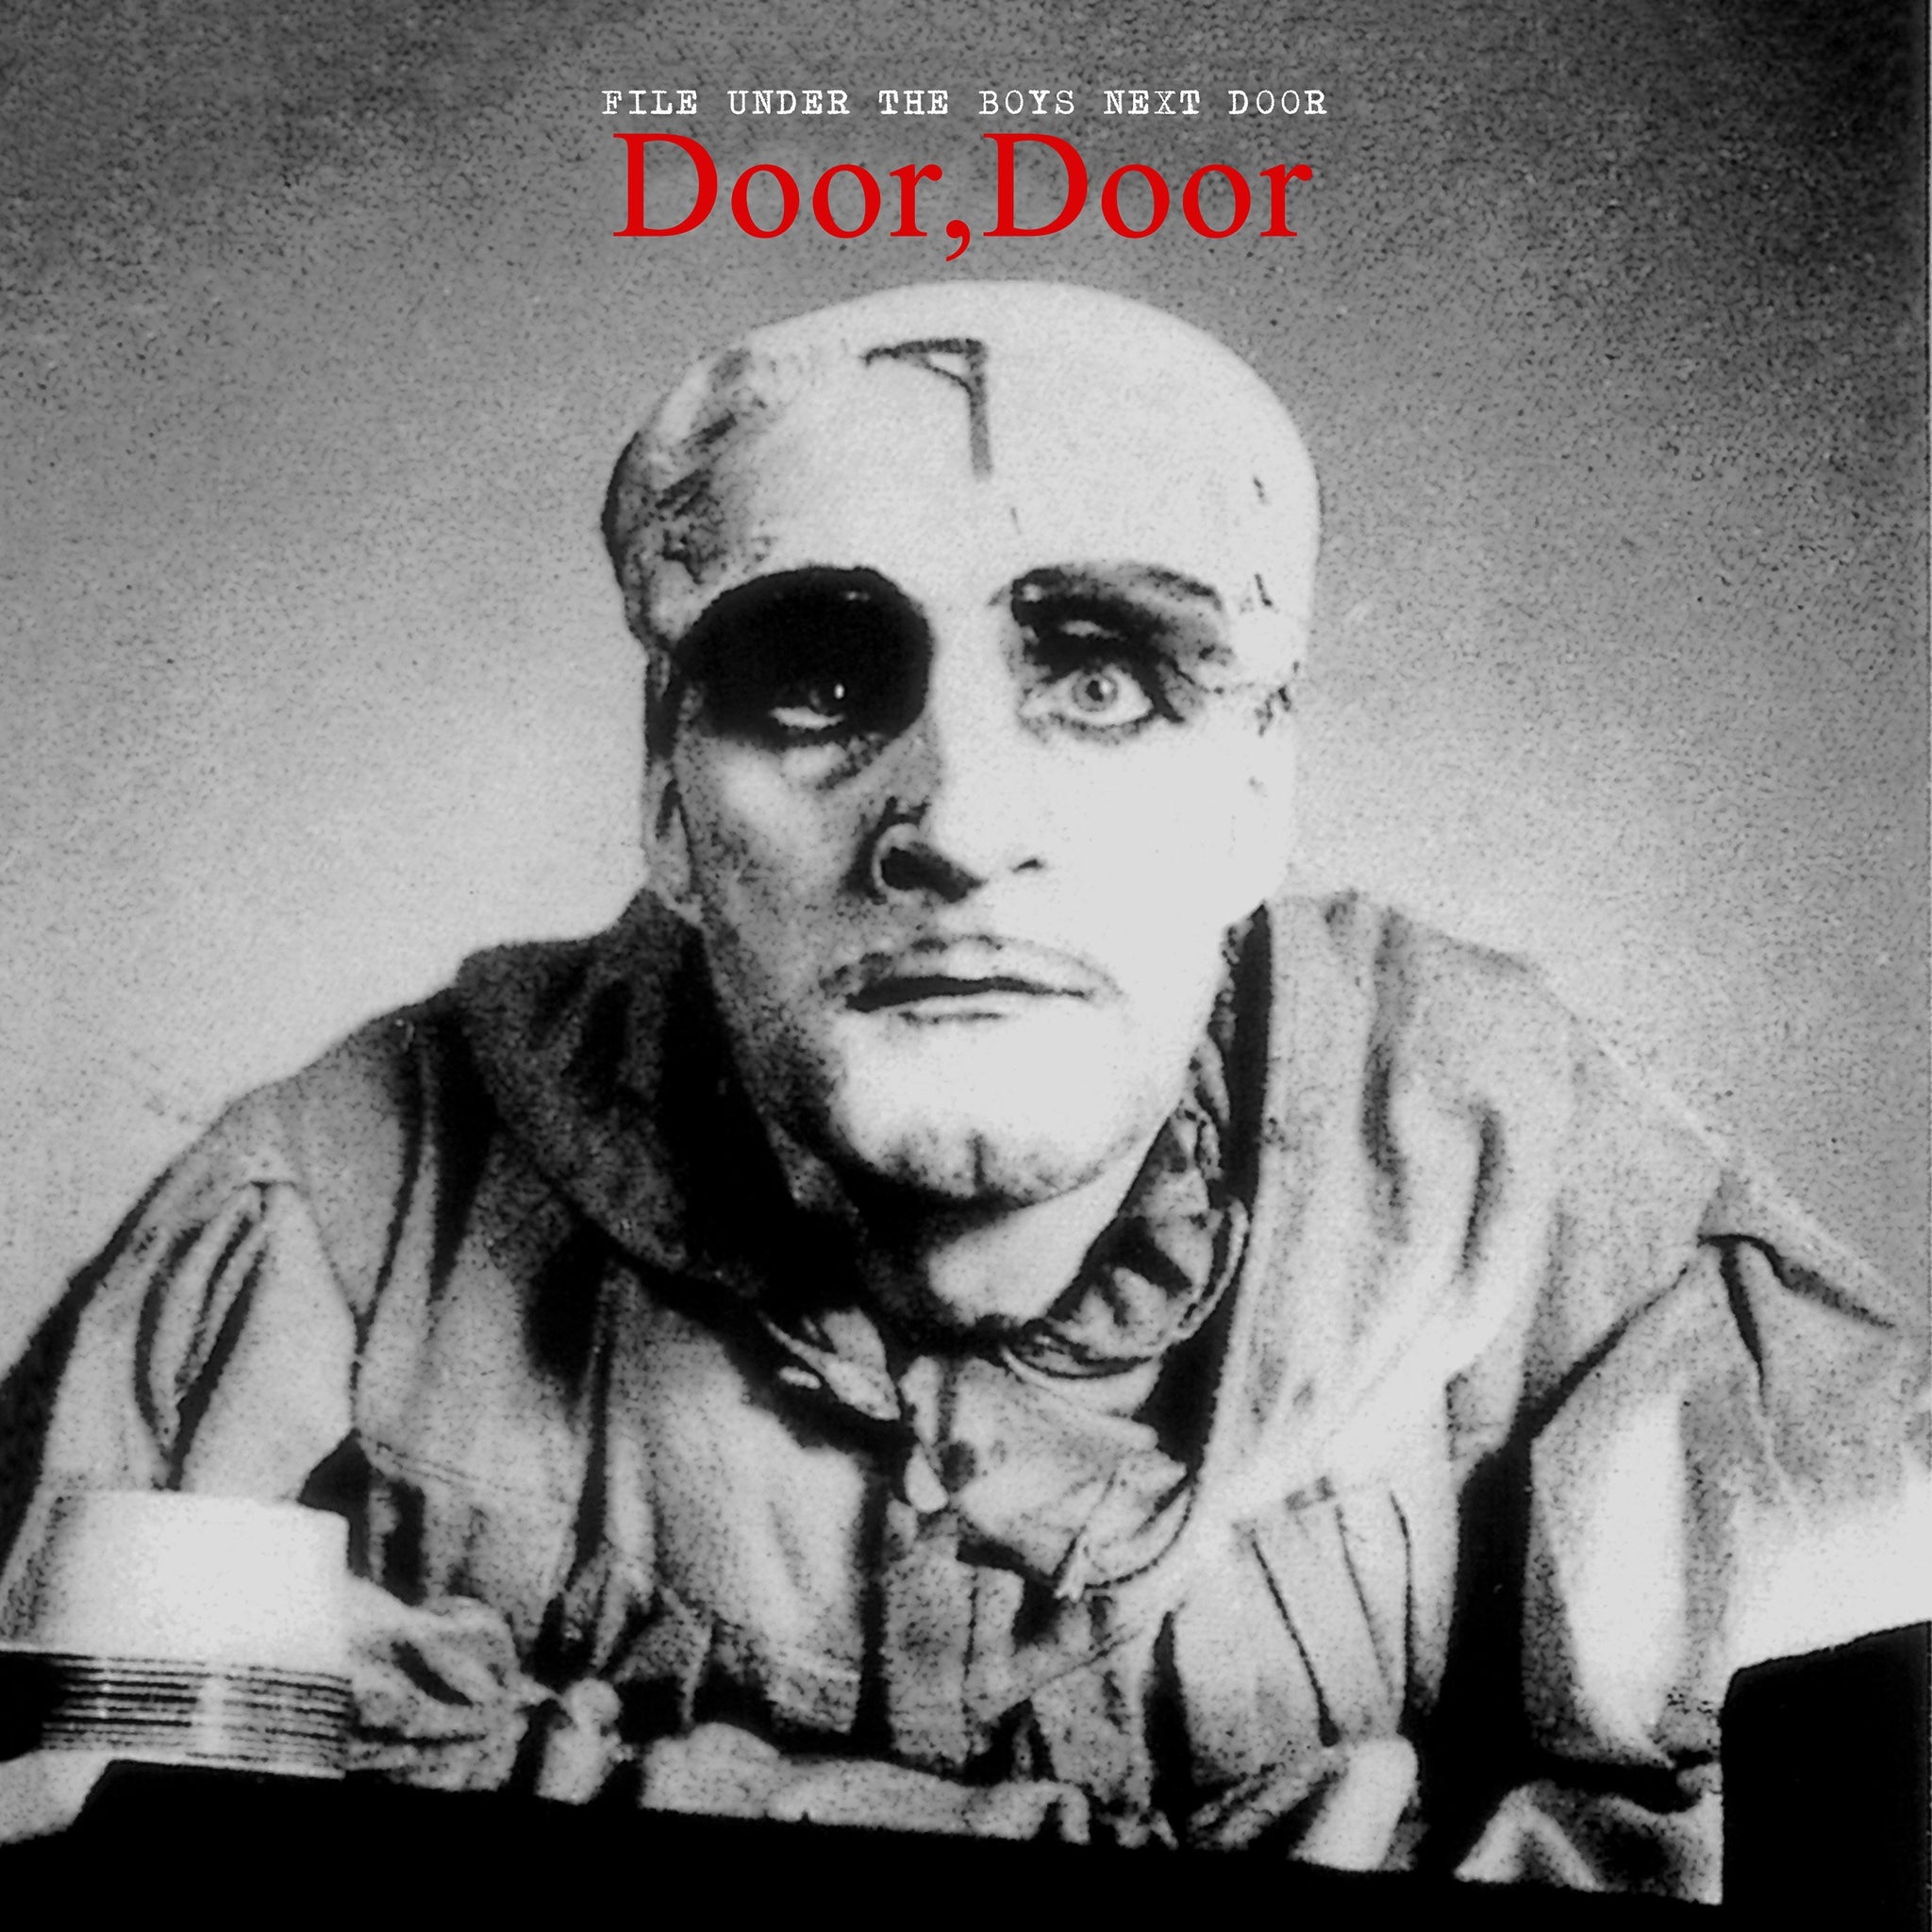 The Boys Next Door - Door, Door